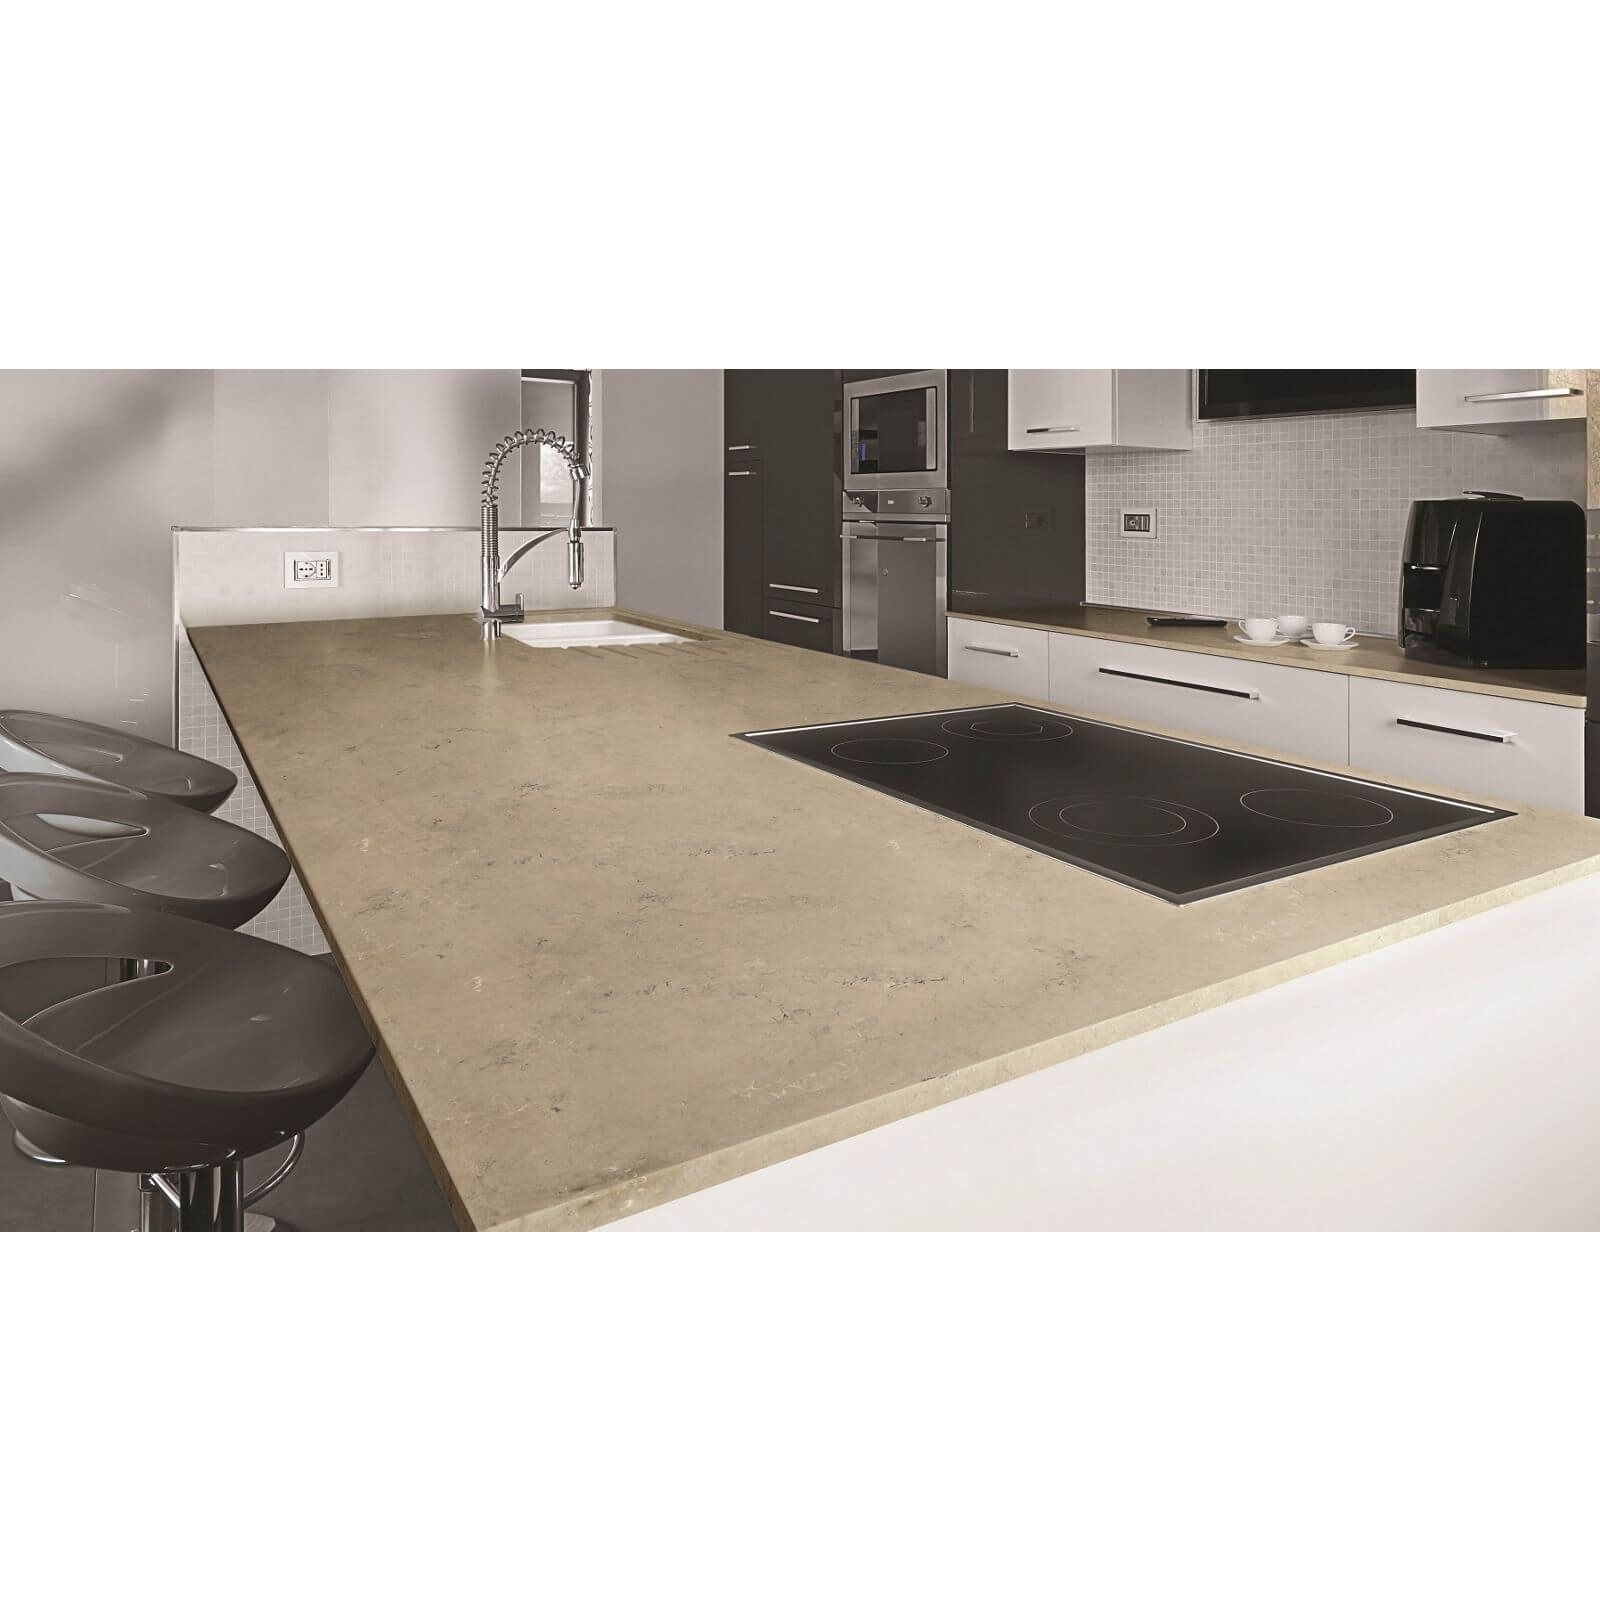 Minerva Desert Rock Kitchen Worktop - 305 x 60 x 2.5cm